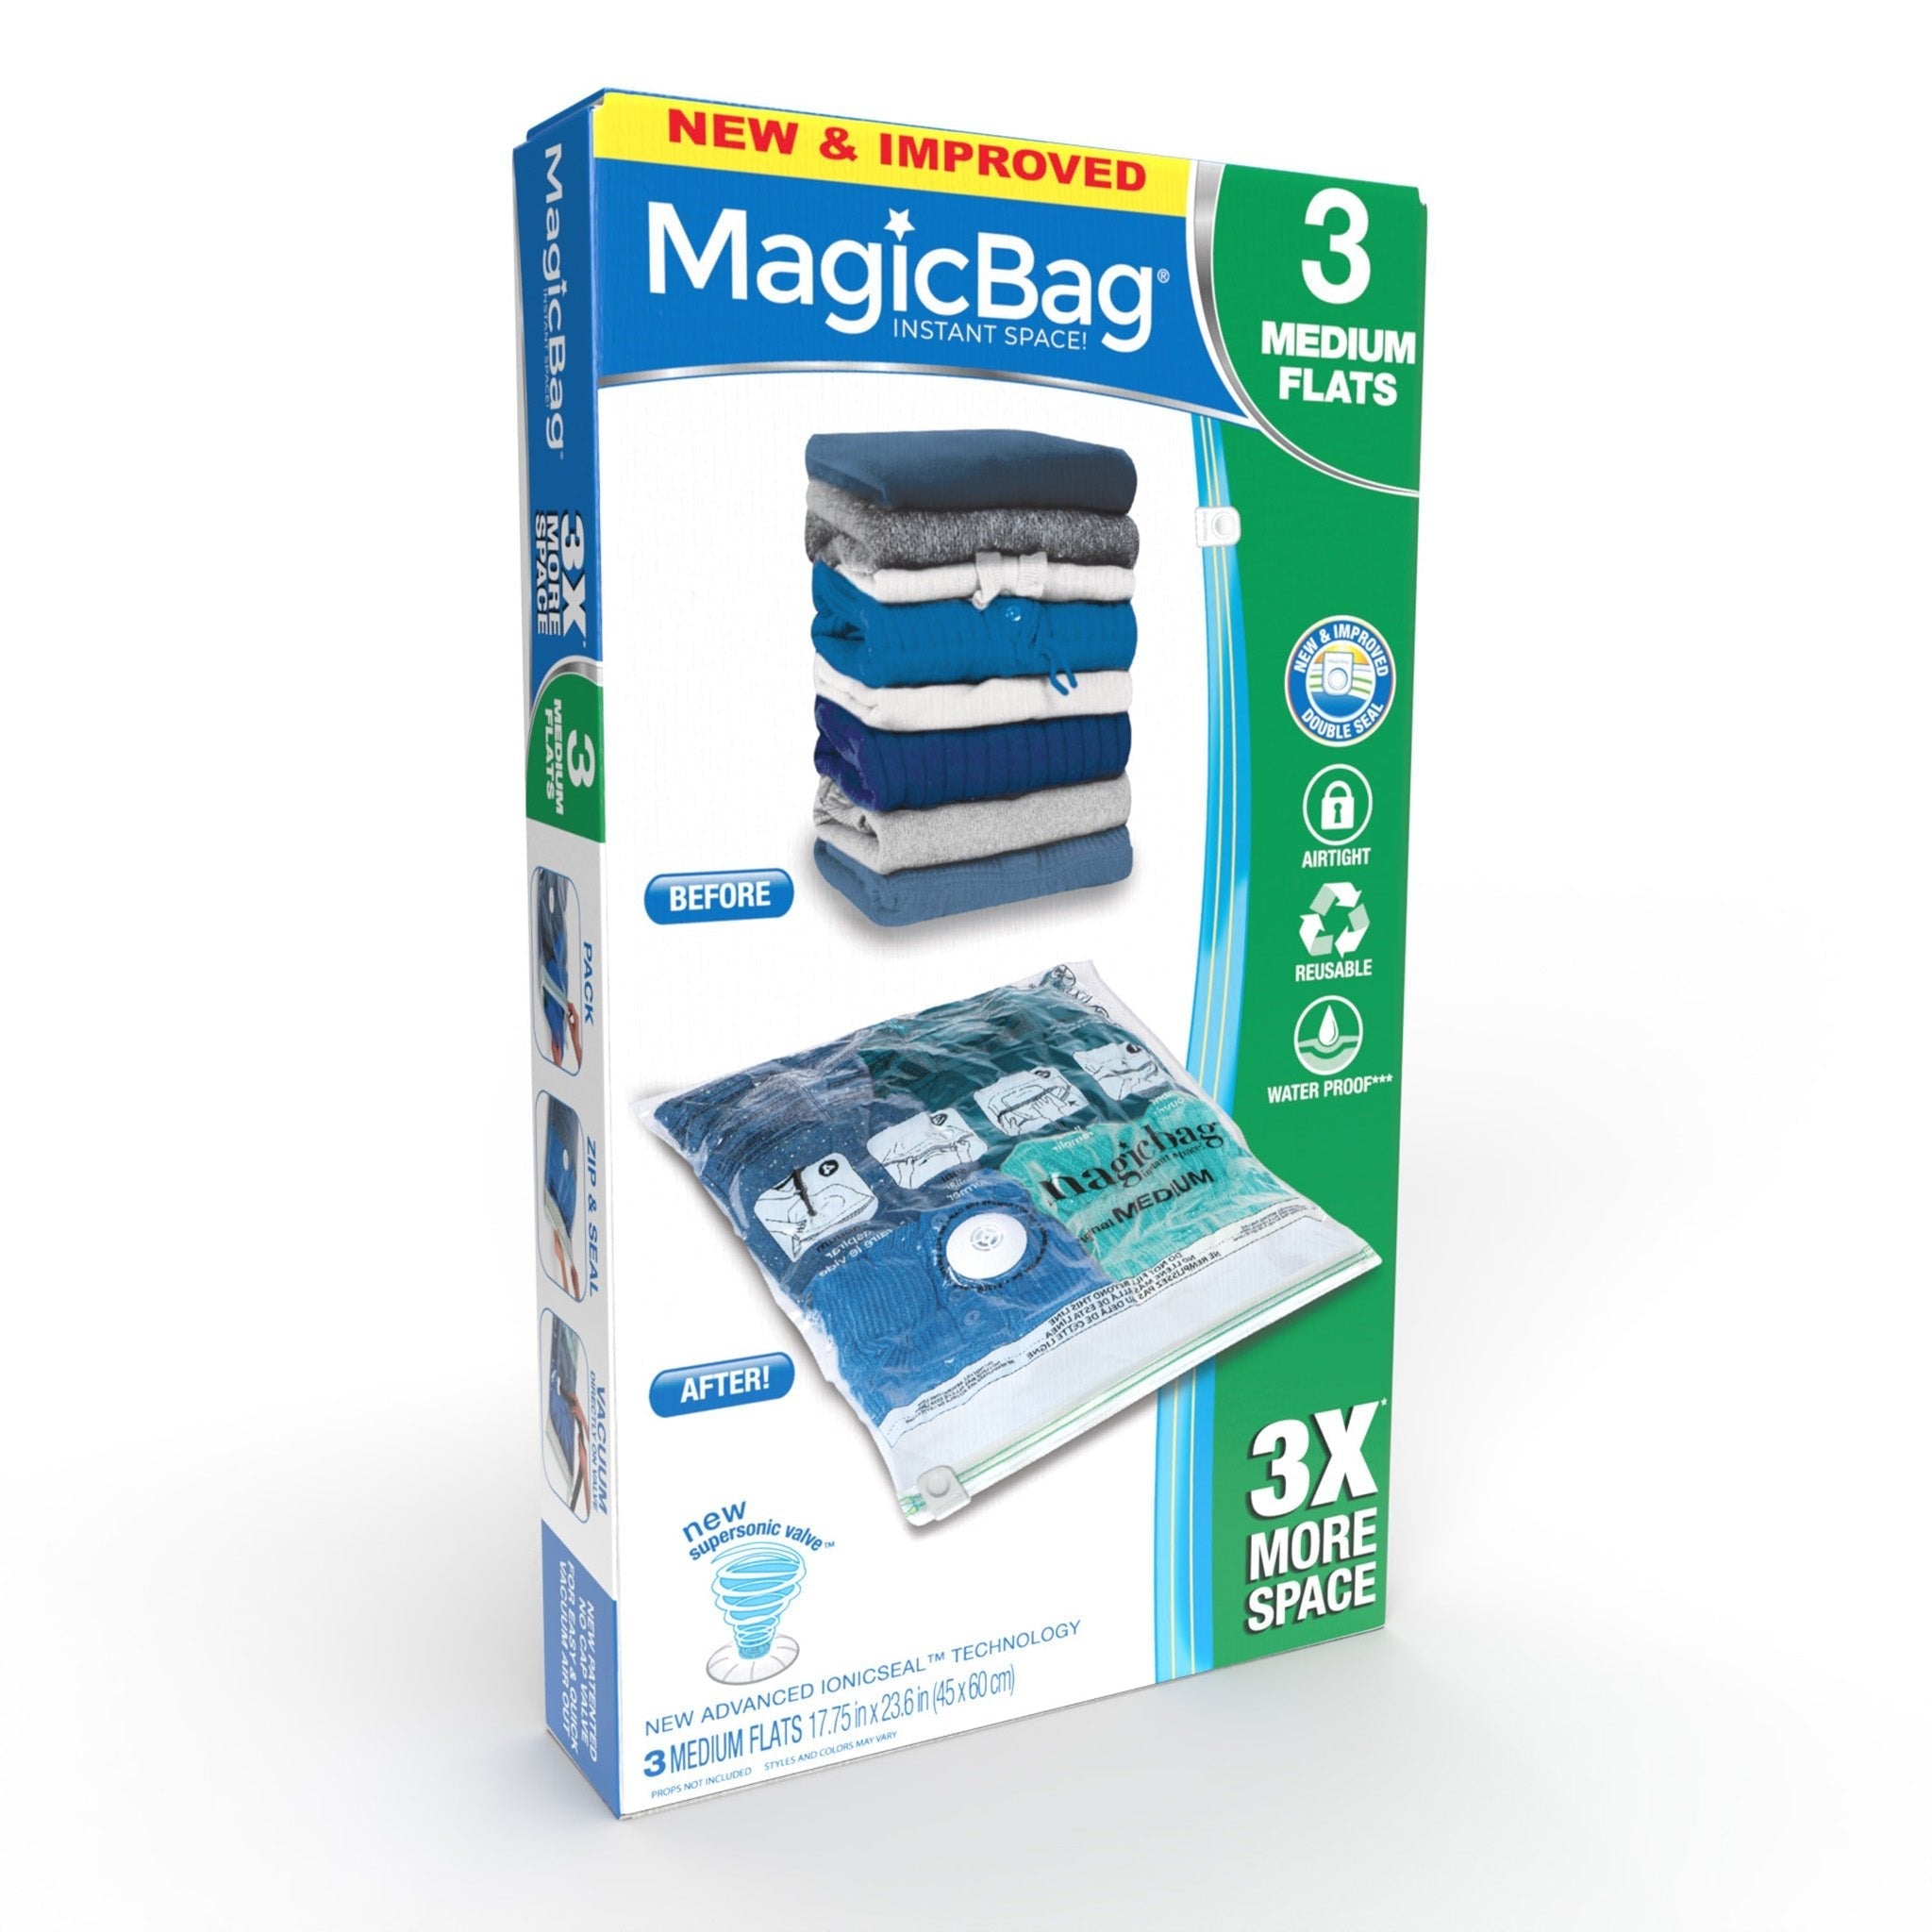 http://www.shopsmartdesign.com/cdn/shop/products/magicbag-instant-space-saver-storage-flat-medium-smart-design-magicbag-5912412-200-incrementing-number-371898.jpg?v=1679340460